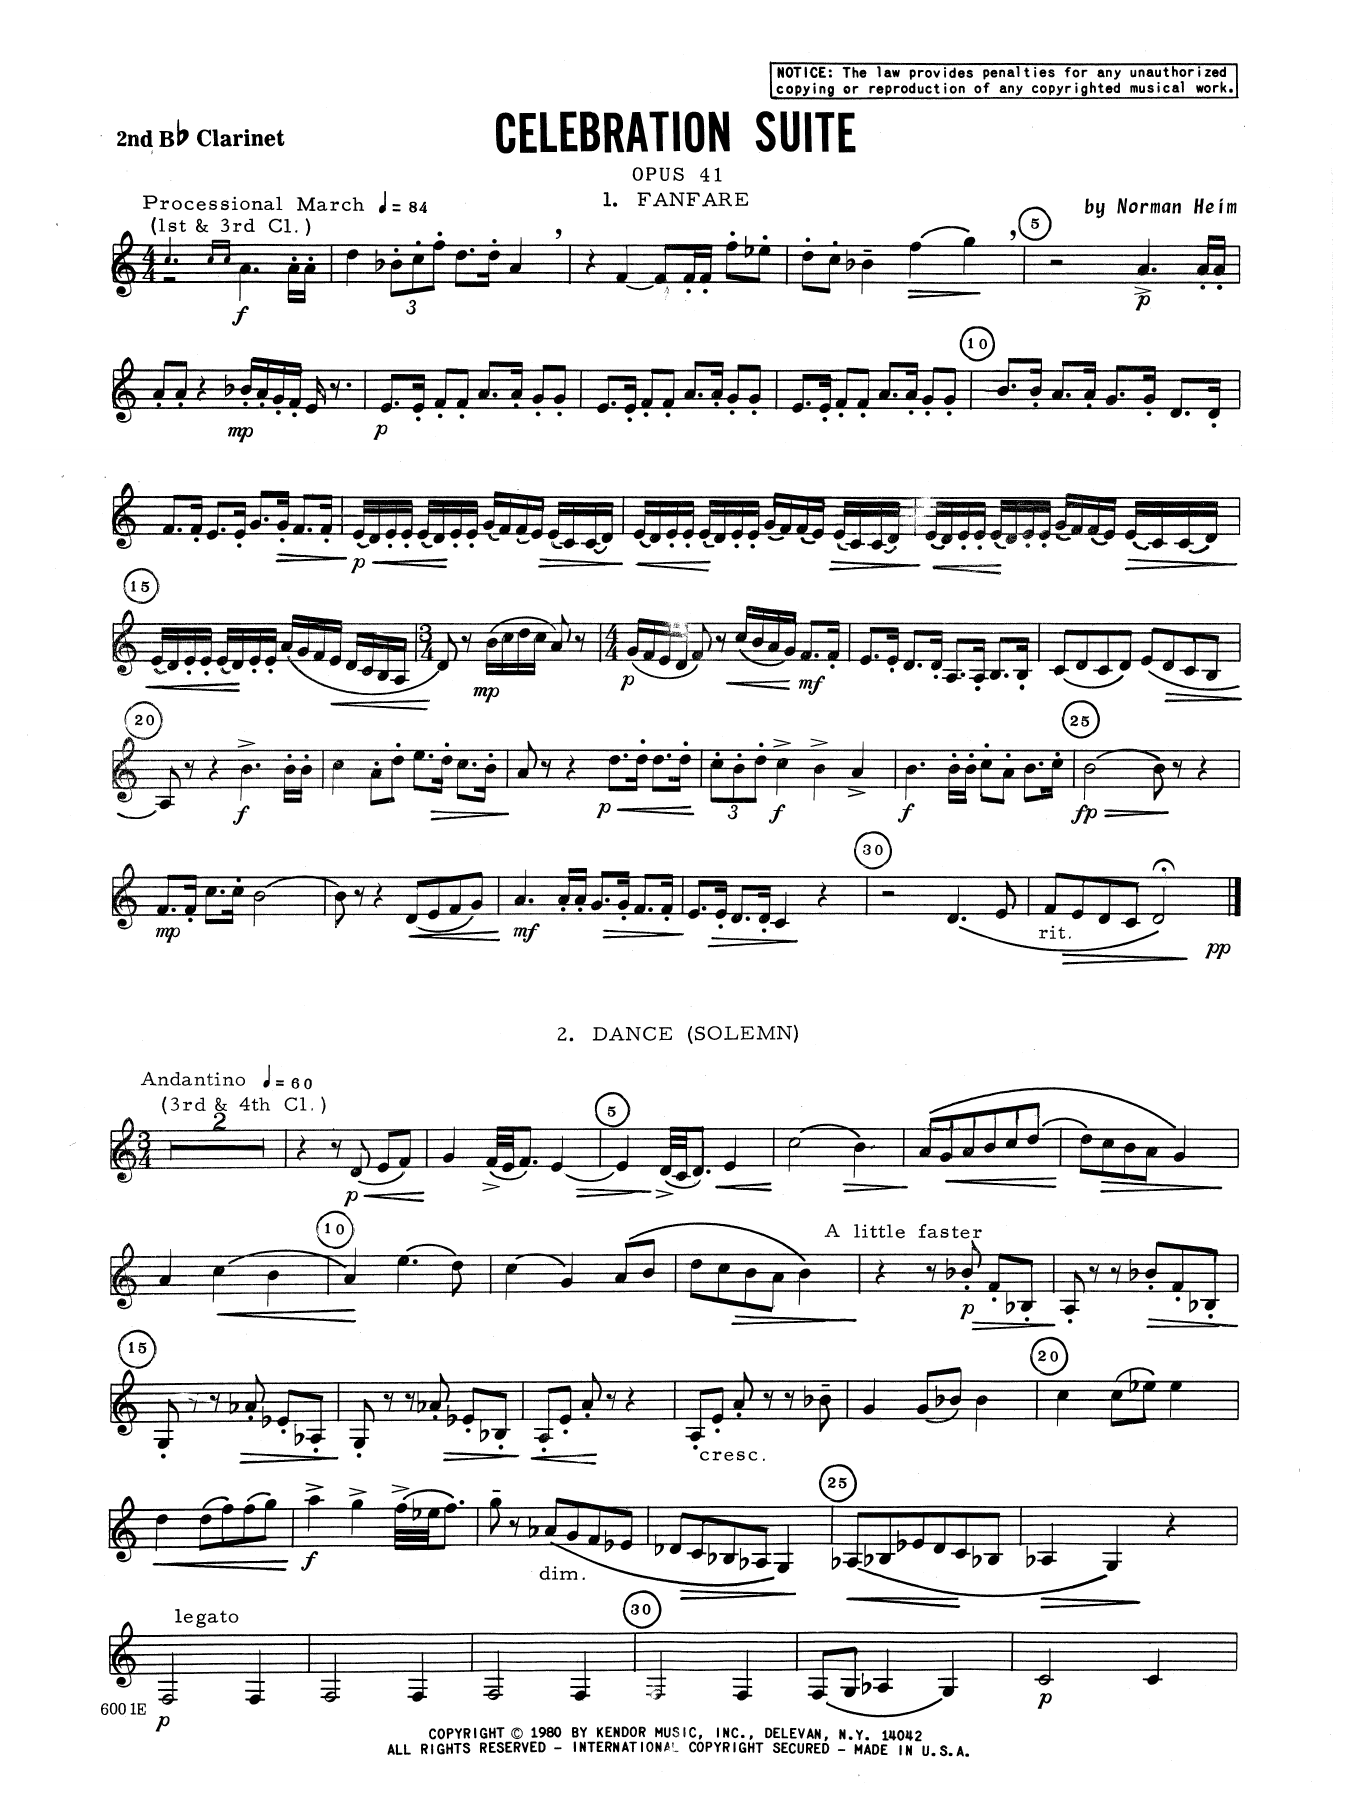 Download Heim Celebration Suite - 2nd Bb Clarinet Sheet Music